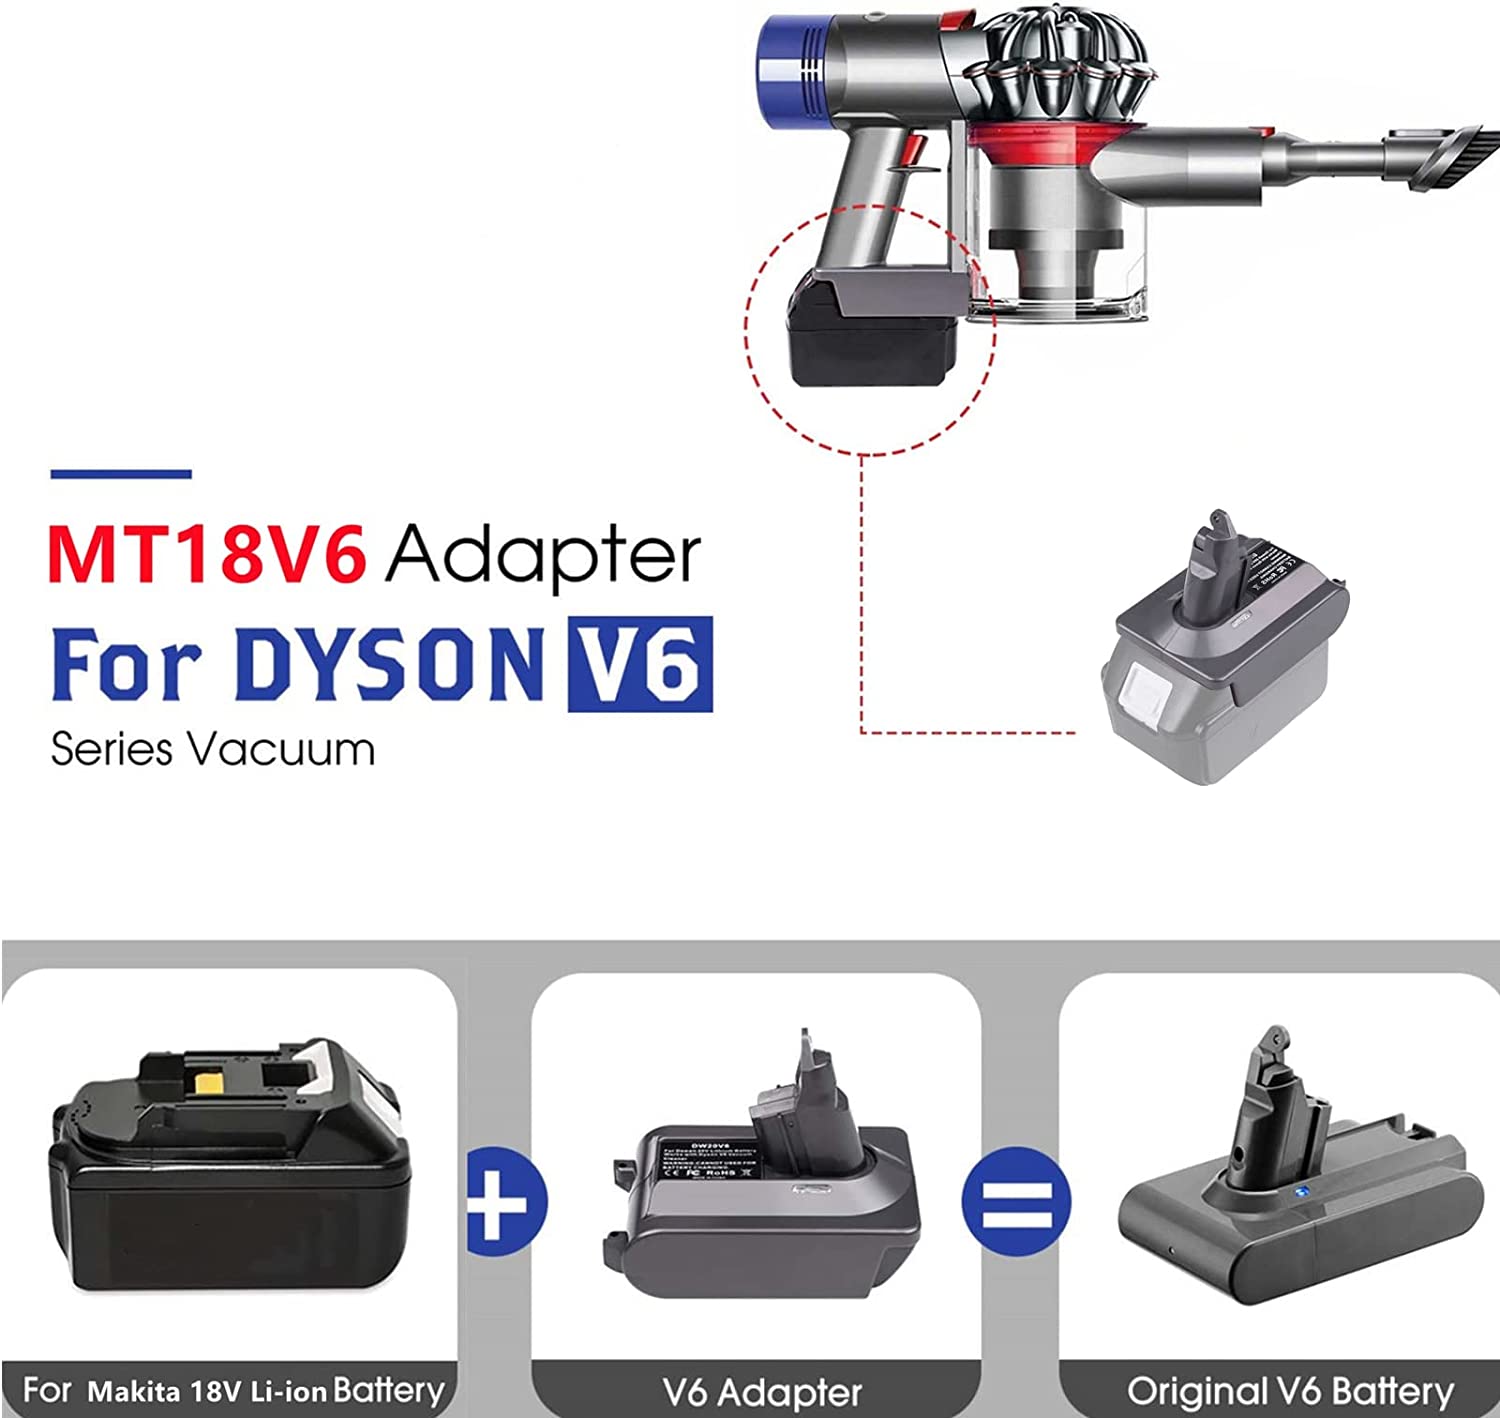 Dyson V6 մարտկոցի ադապտեր Makita 18V լիթիումի մարտկոցի համար փոխարկվել է Dyson V6 մարտկոցի